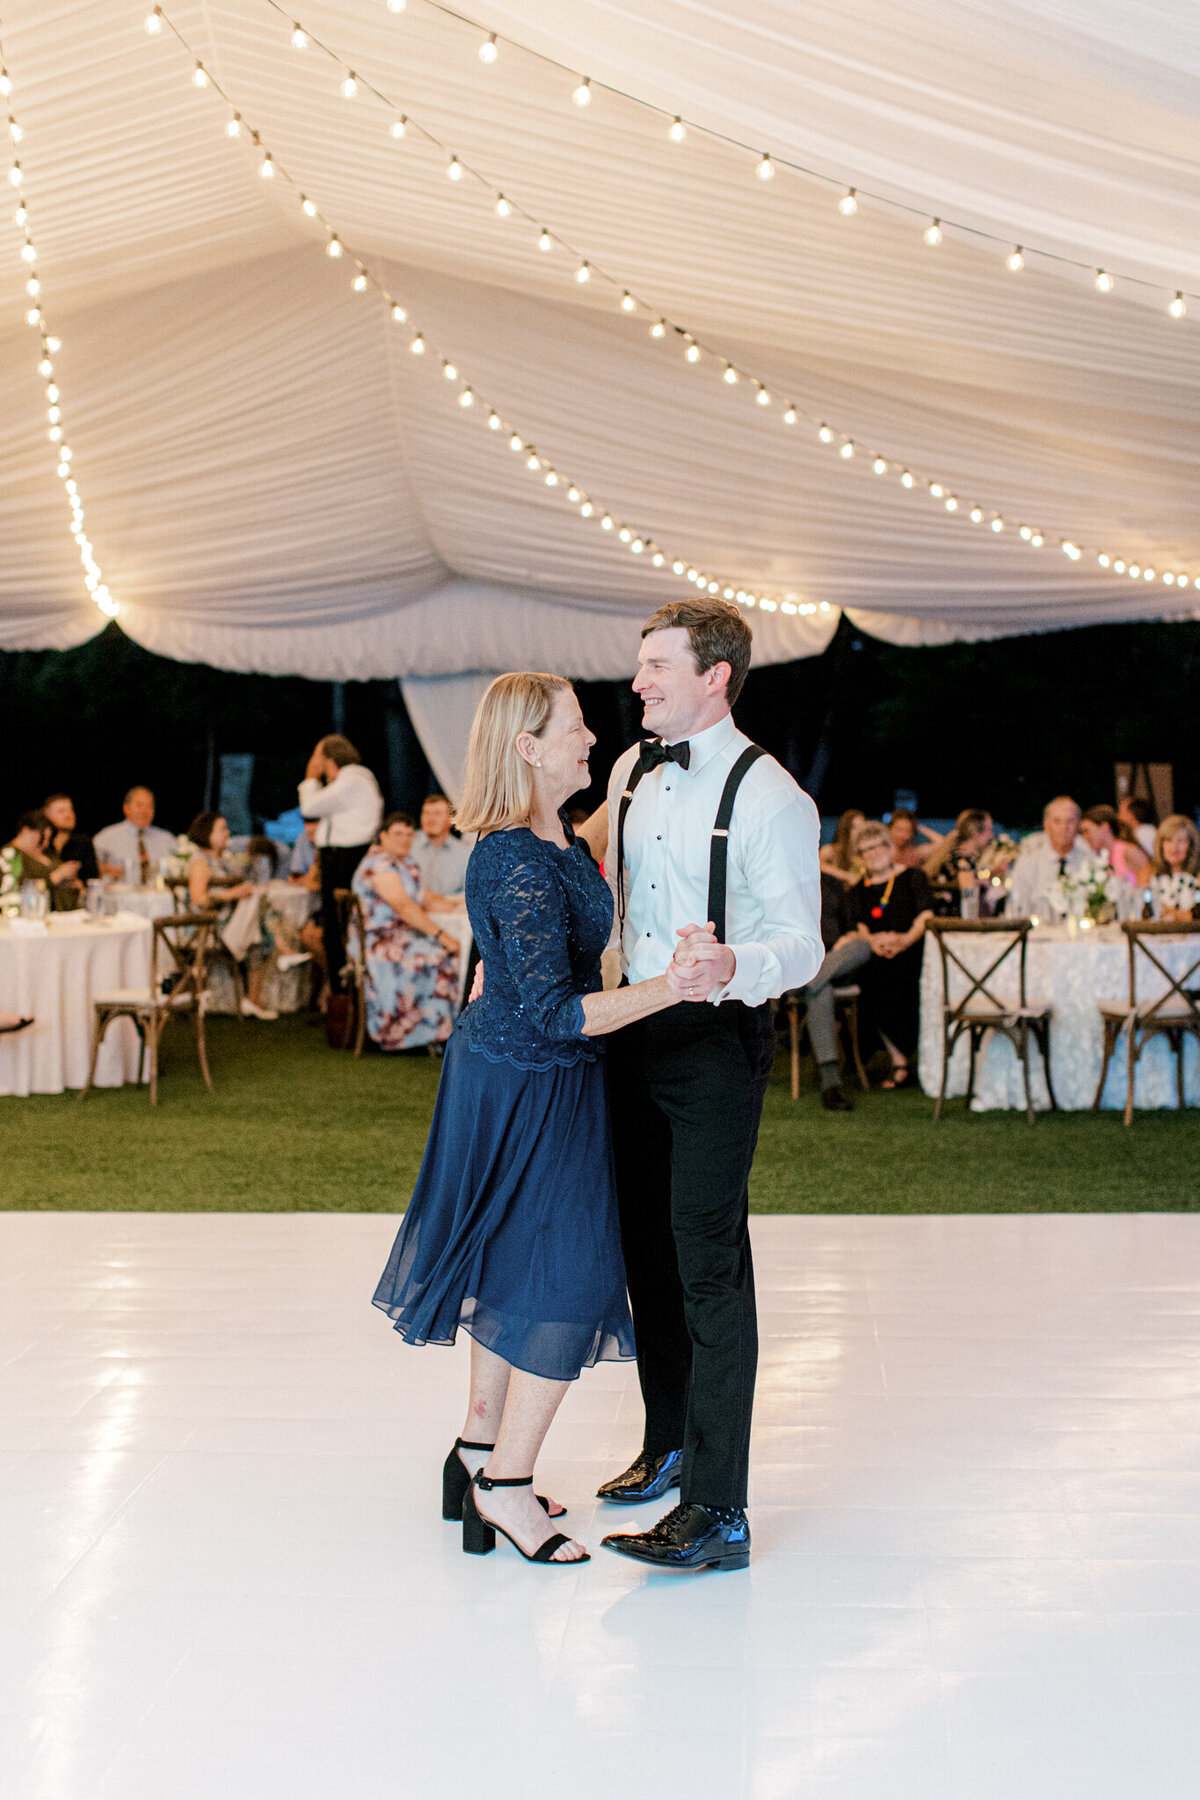 Gena & Matt's Wedding at the Dallas Arboretum | Dallas Wedding Photographer | Sami Kathryn Photography-255